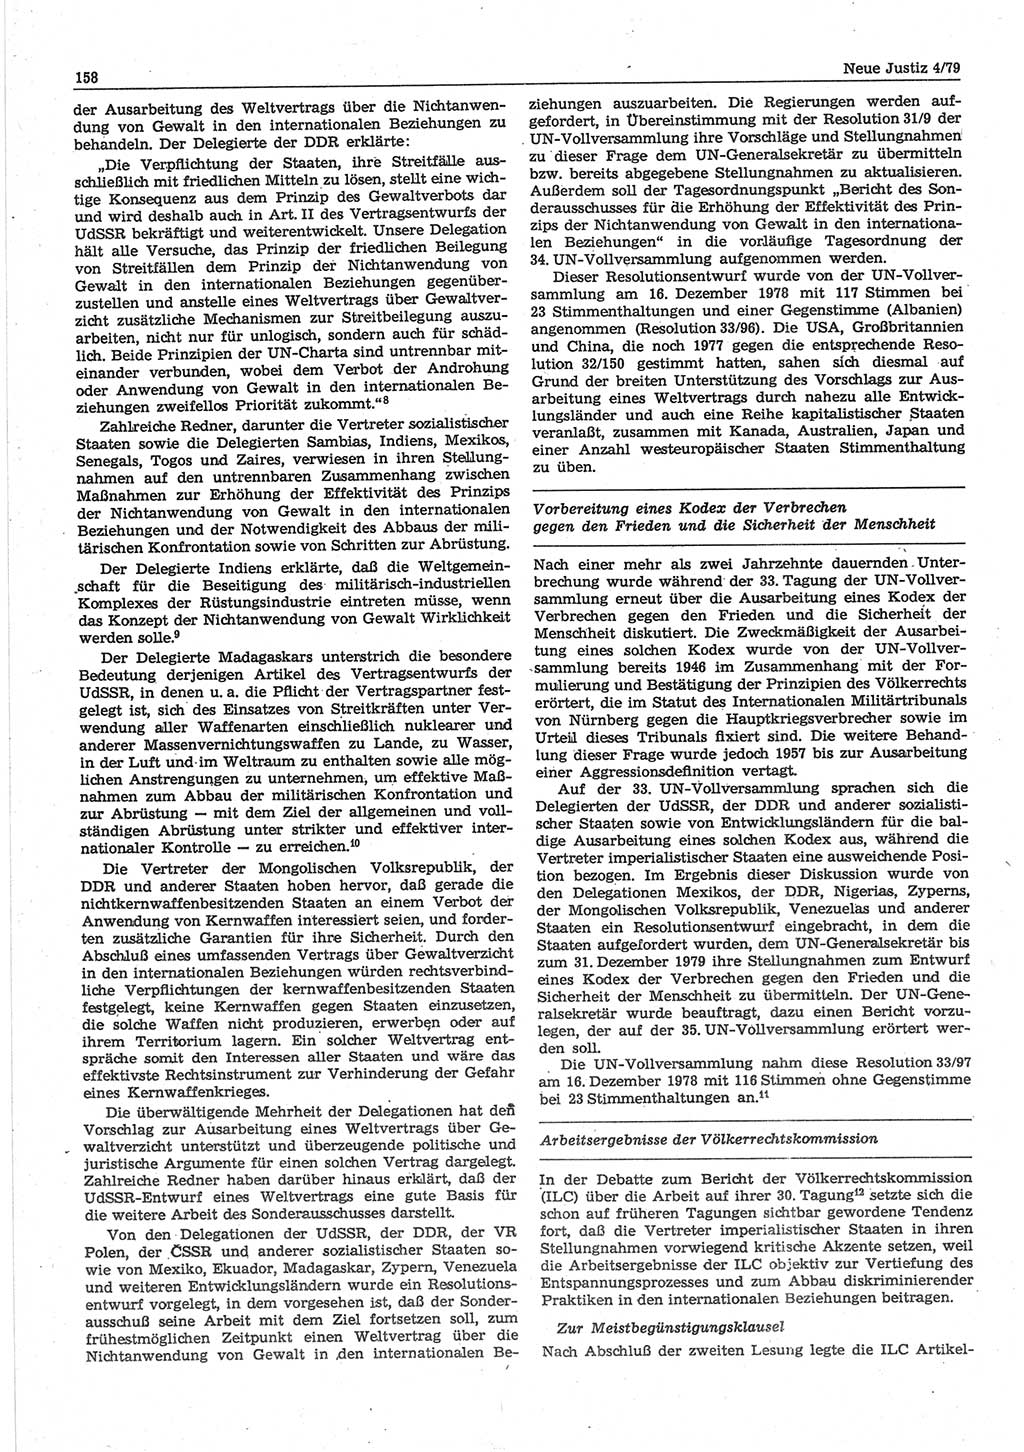 Neue Justiz (NJ), Zeitschrift für sozialistisches Recht und Gesetzlichkeit [Deutsche Demokratische Republik (DDR)], 33. Jahrgang 1979, Seite 158 (NJ DDR 1979, S. 158)